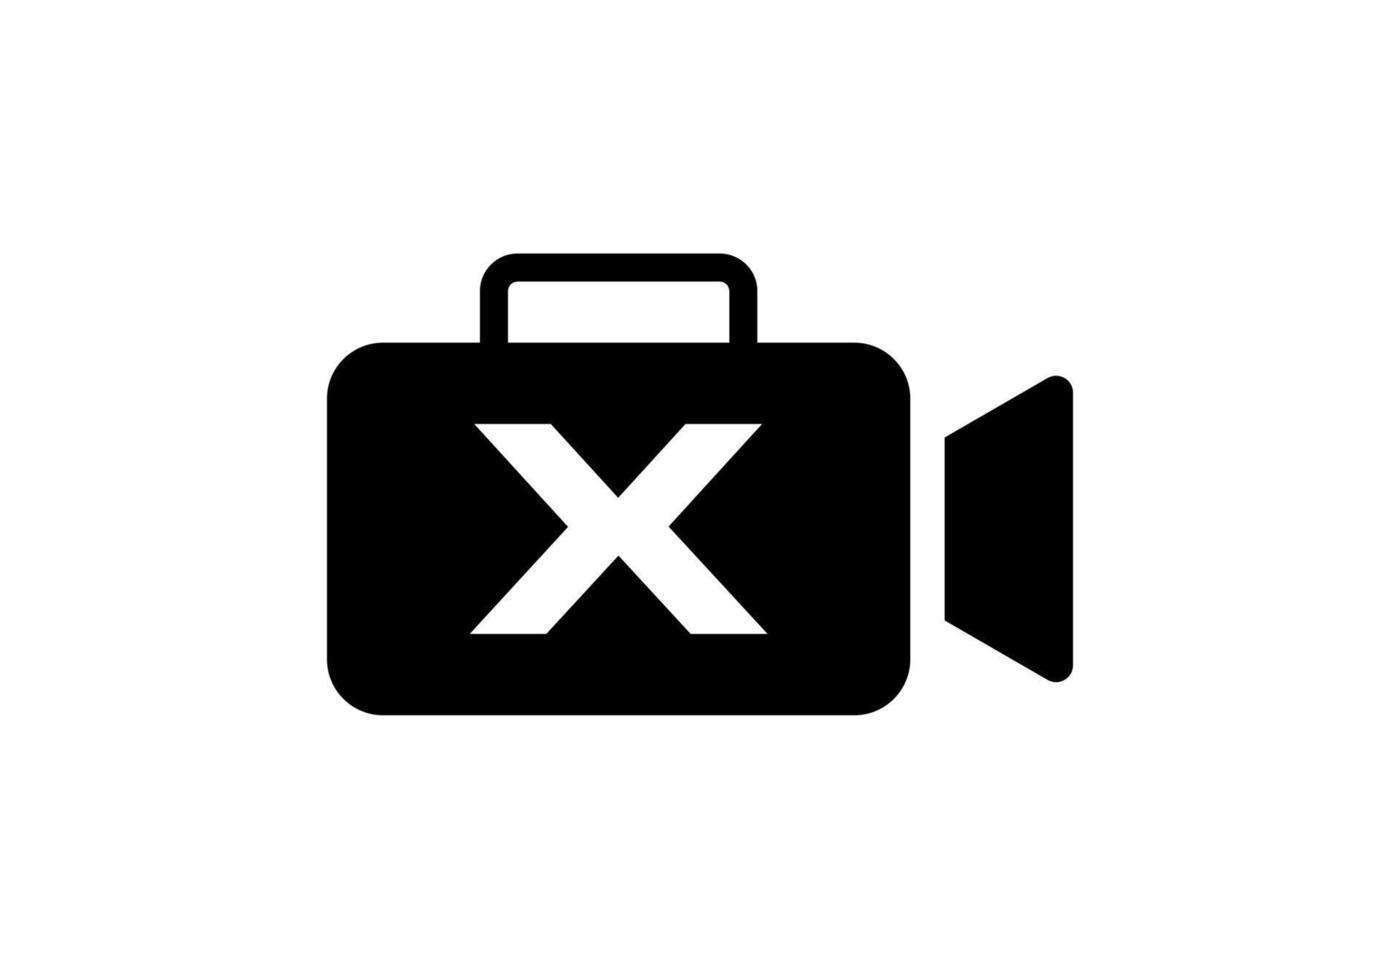 brev x filma video kamera logotyp design bio filma och videography tecken vektor